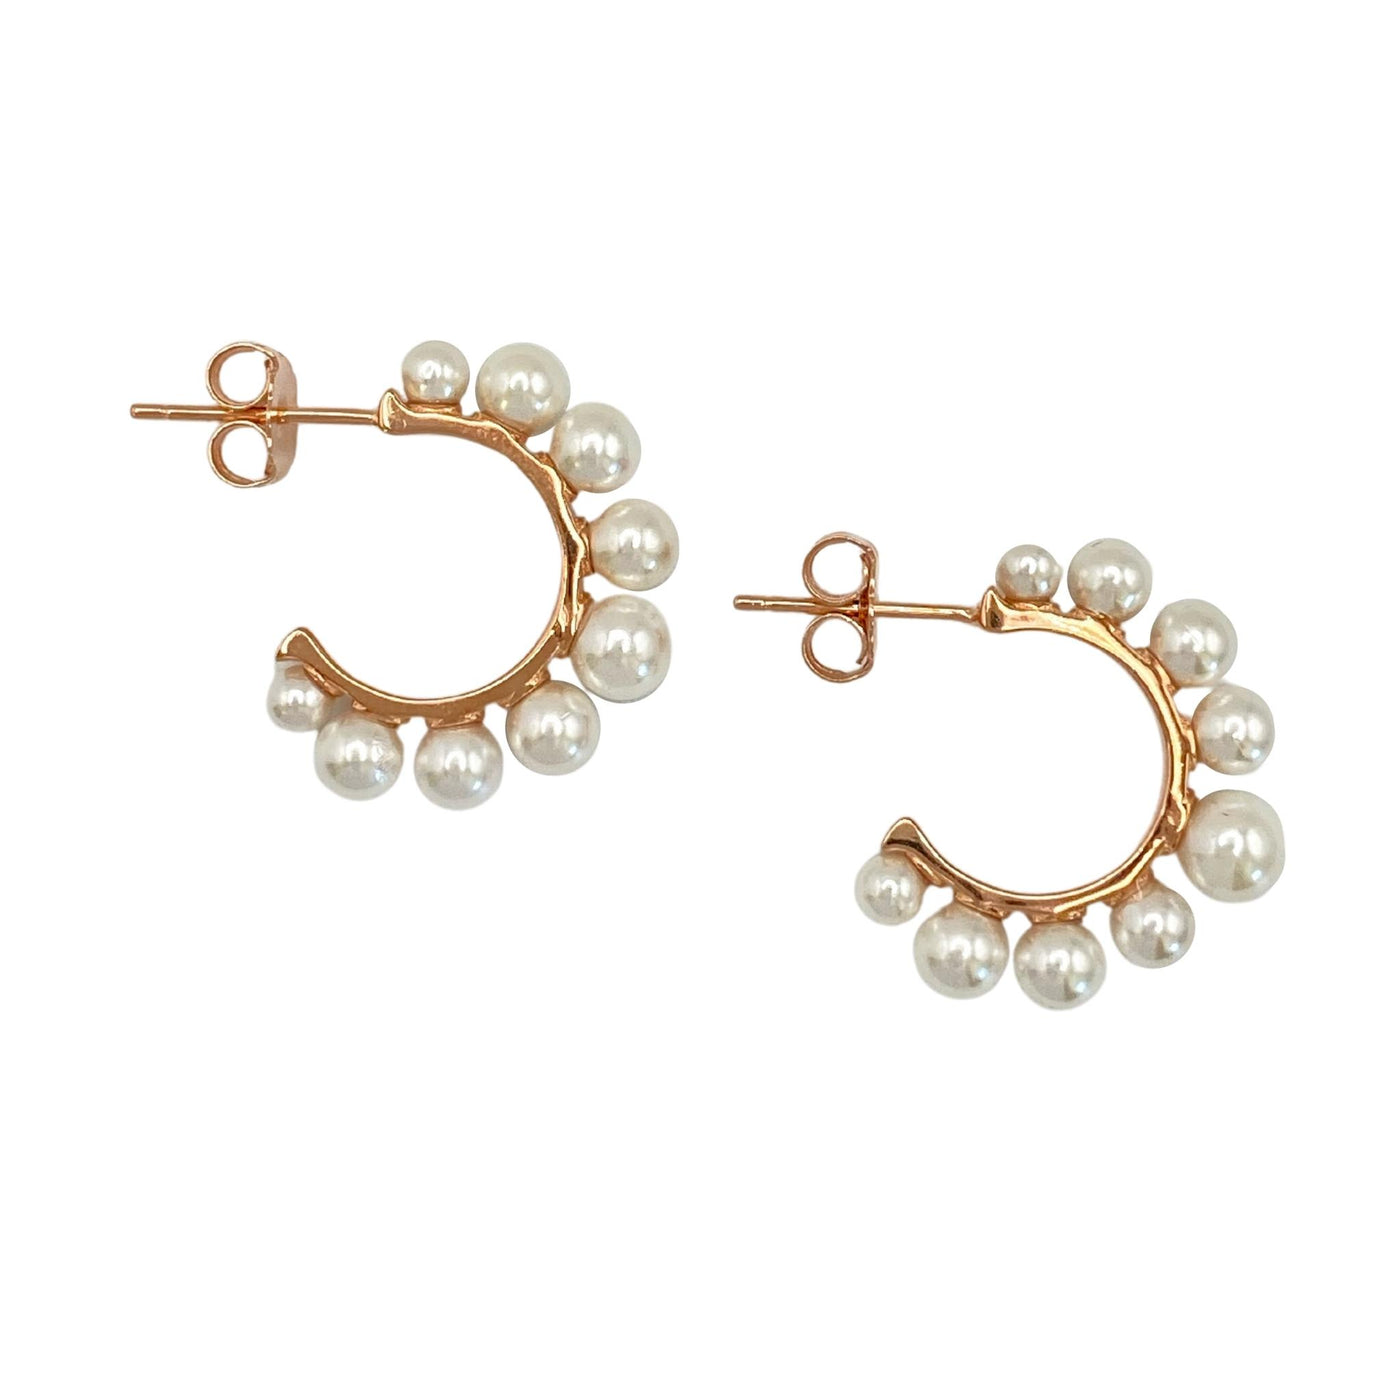 Silver hoop earrings with pearls - 23 mm